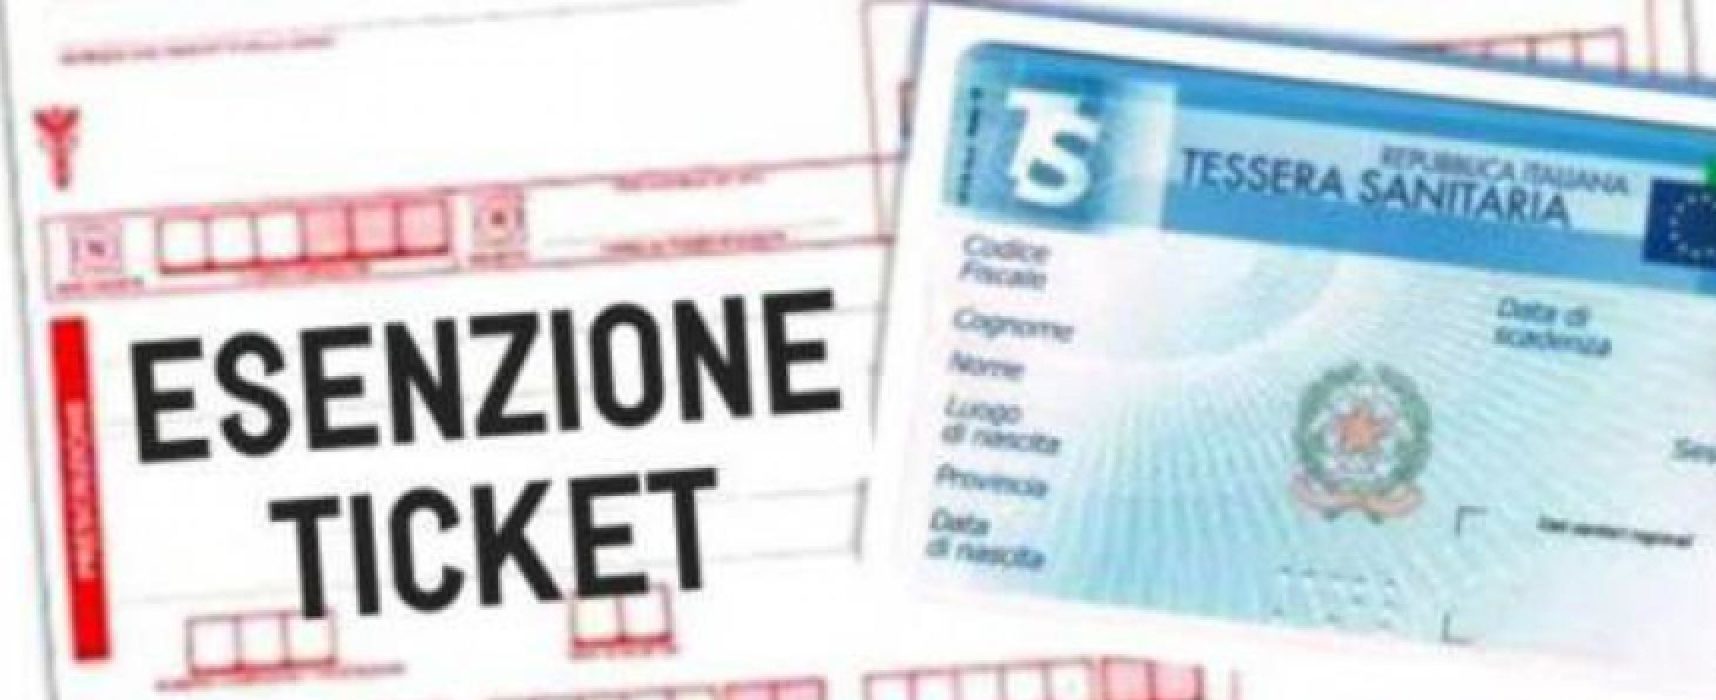 Sanità Regione Puglia: esenzioni ticket per reddito, prorogati i termini / DETTAGLI